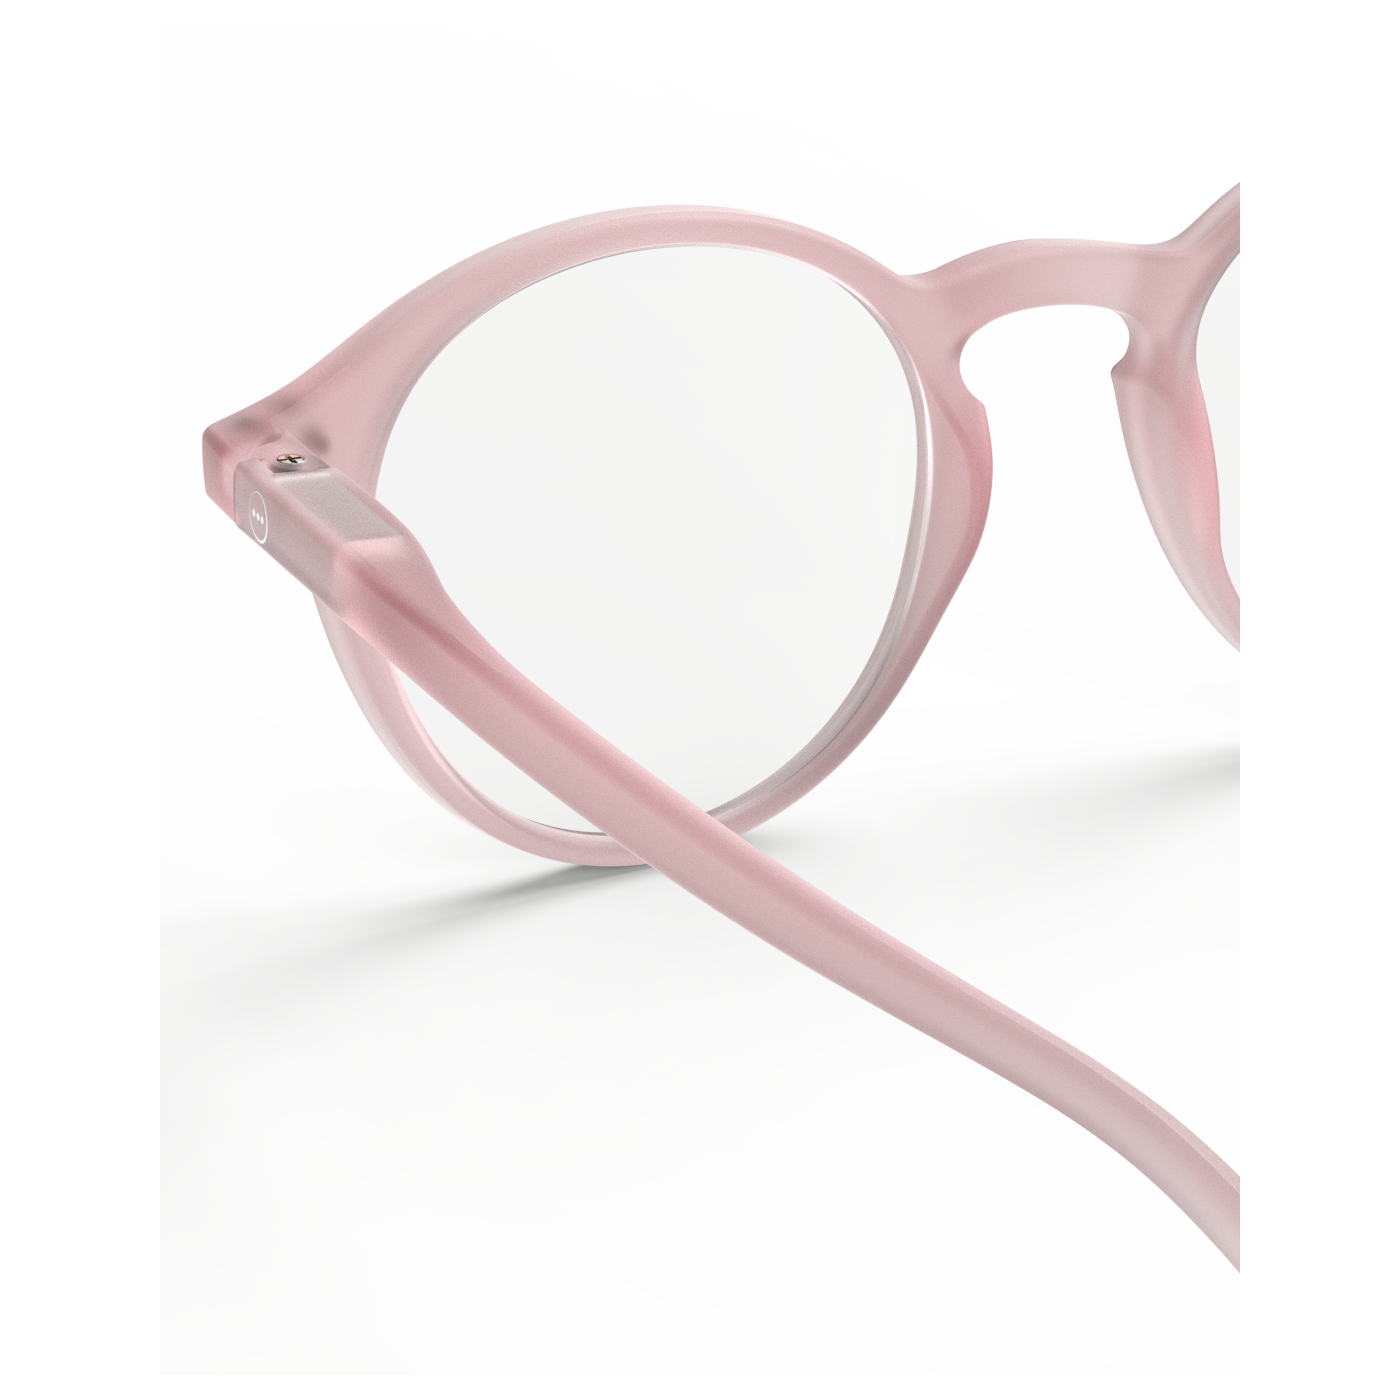 Izipizi #D pink reading glasses